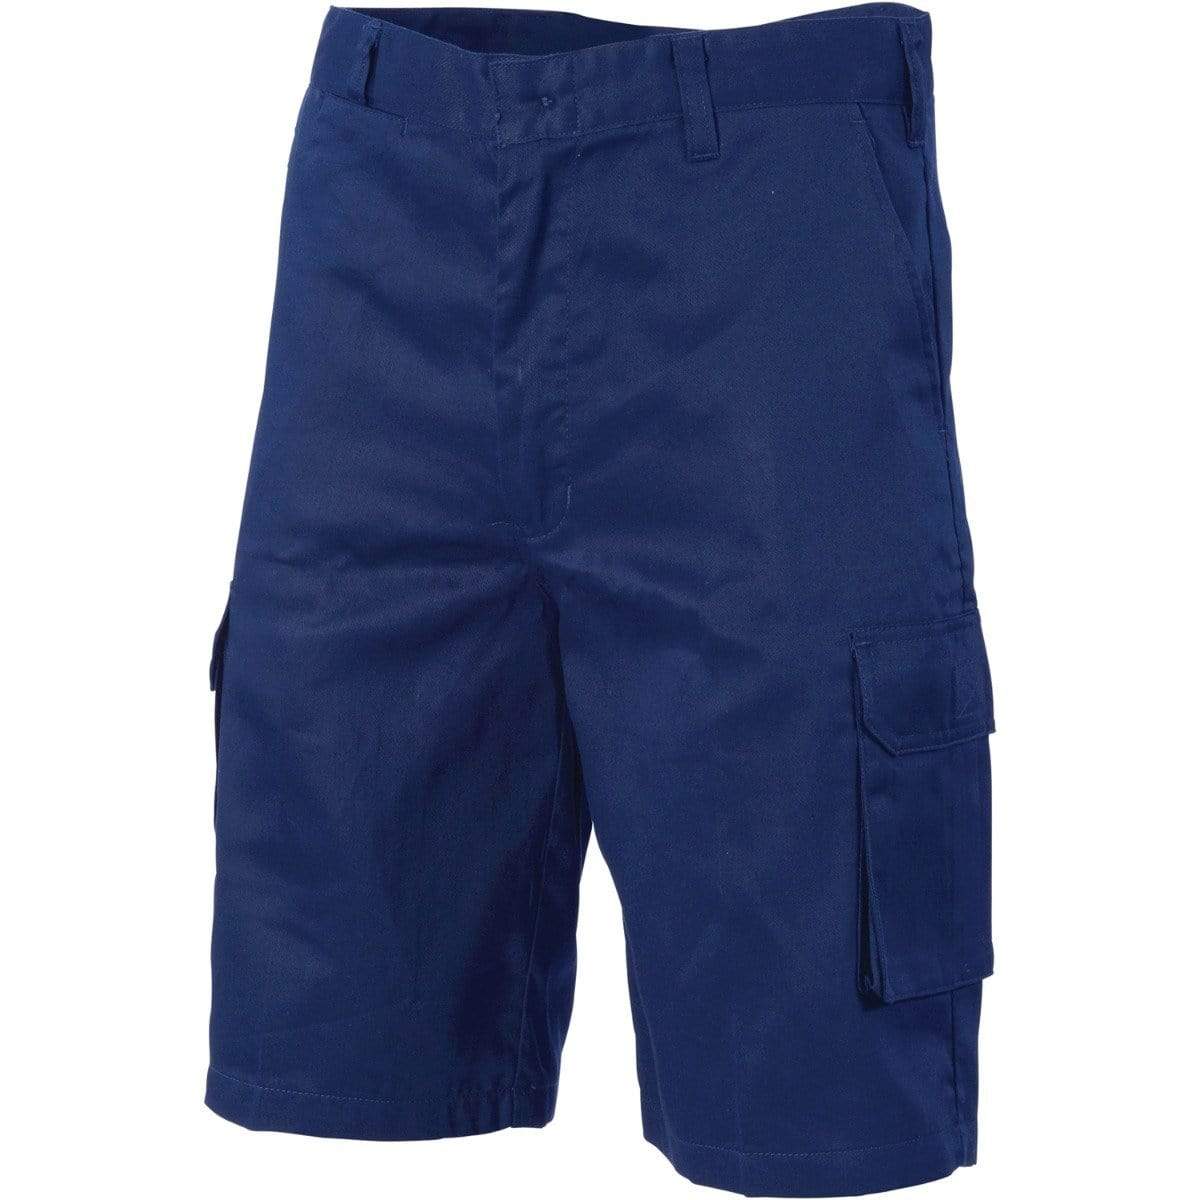 Dnc Workwear Lightweight Cool-breeze Cotton Cargo Shorts - 3304